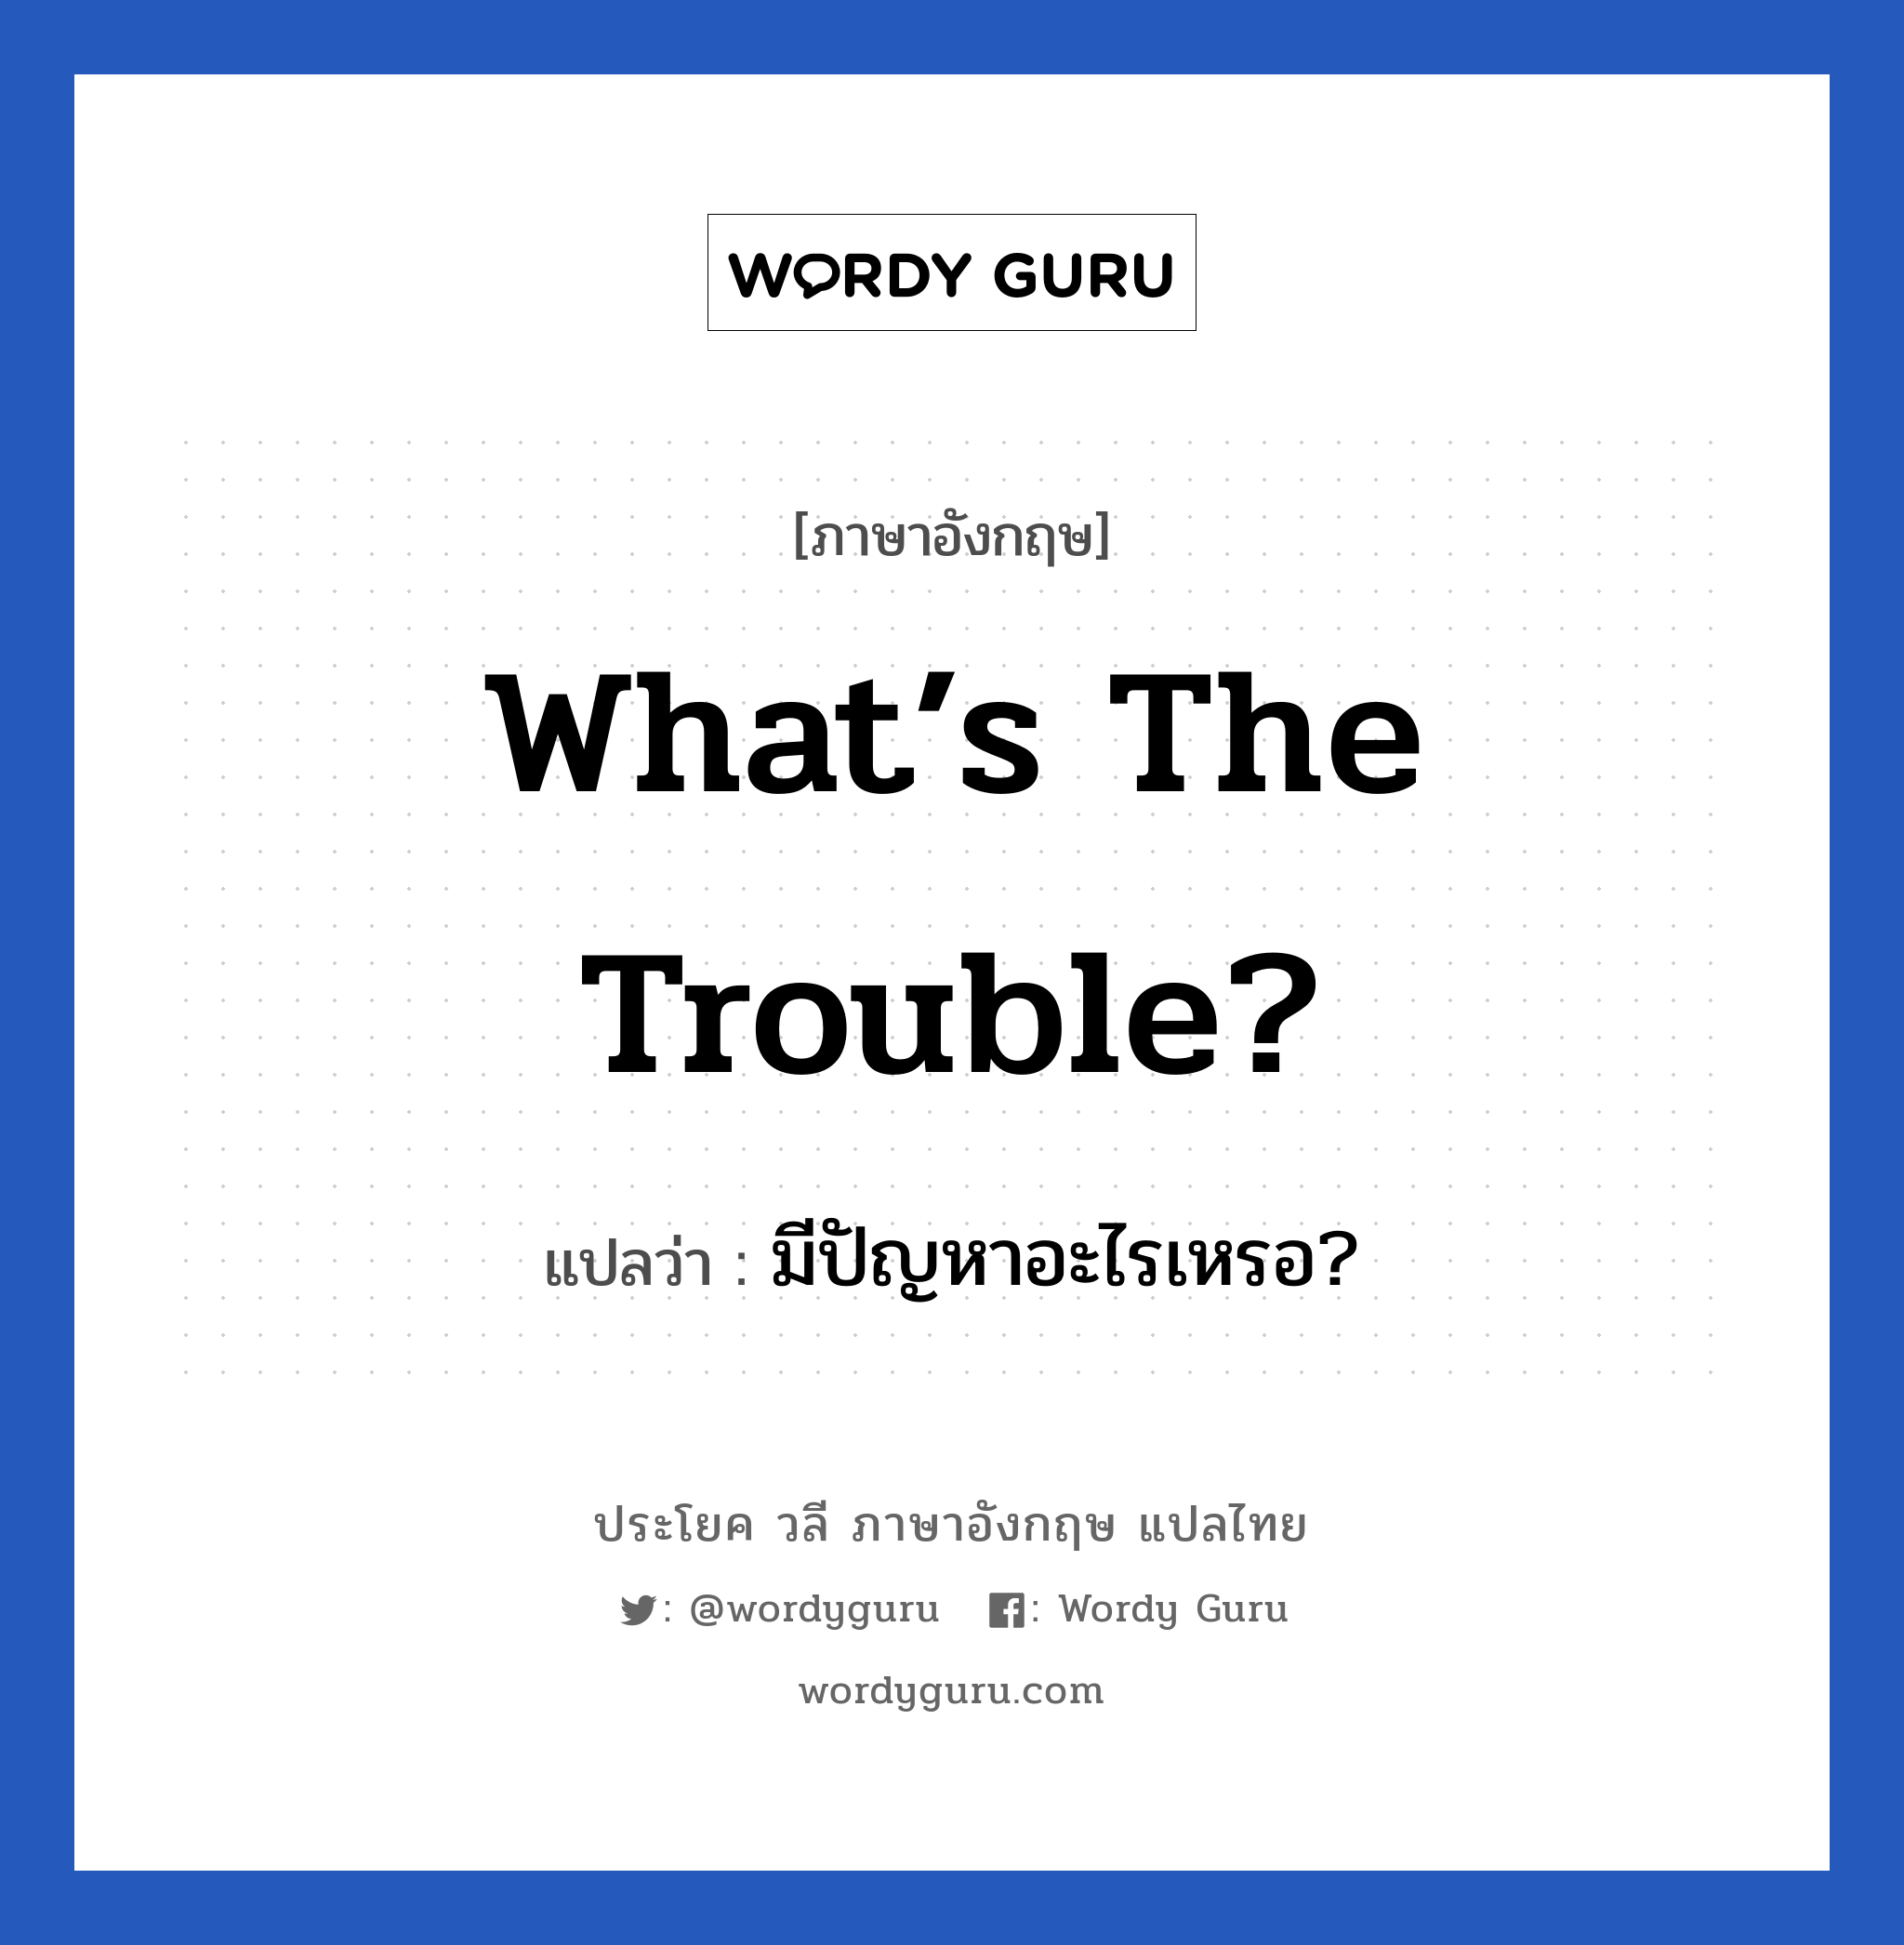 มีปัญหาอะไรเหรอ? ภาษาอังกฤษ?, วลีภาษาอังกฤษ มีปัญหาอะไรเหรอ? แปลว่า What’s the trouble?